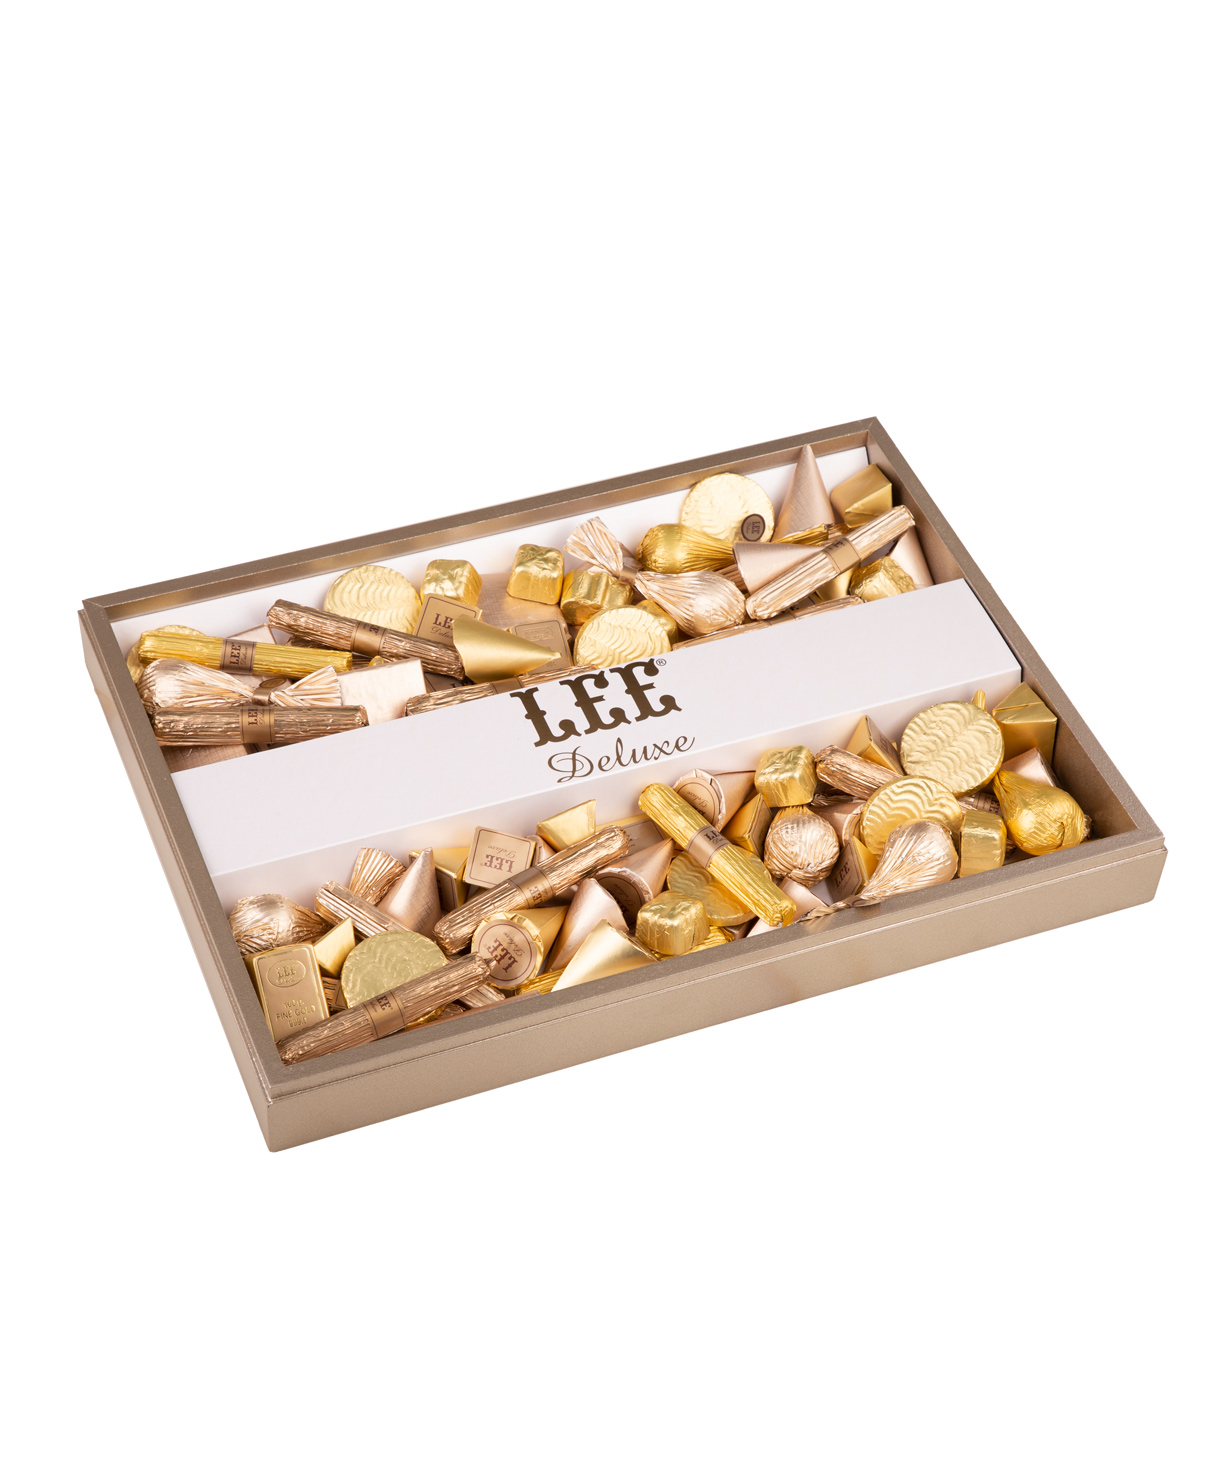 Հավաքածու «LEE» Luxury bronze wooden box շոկոլադների